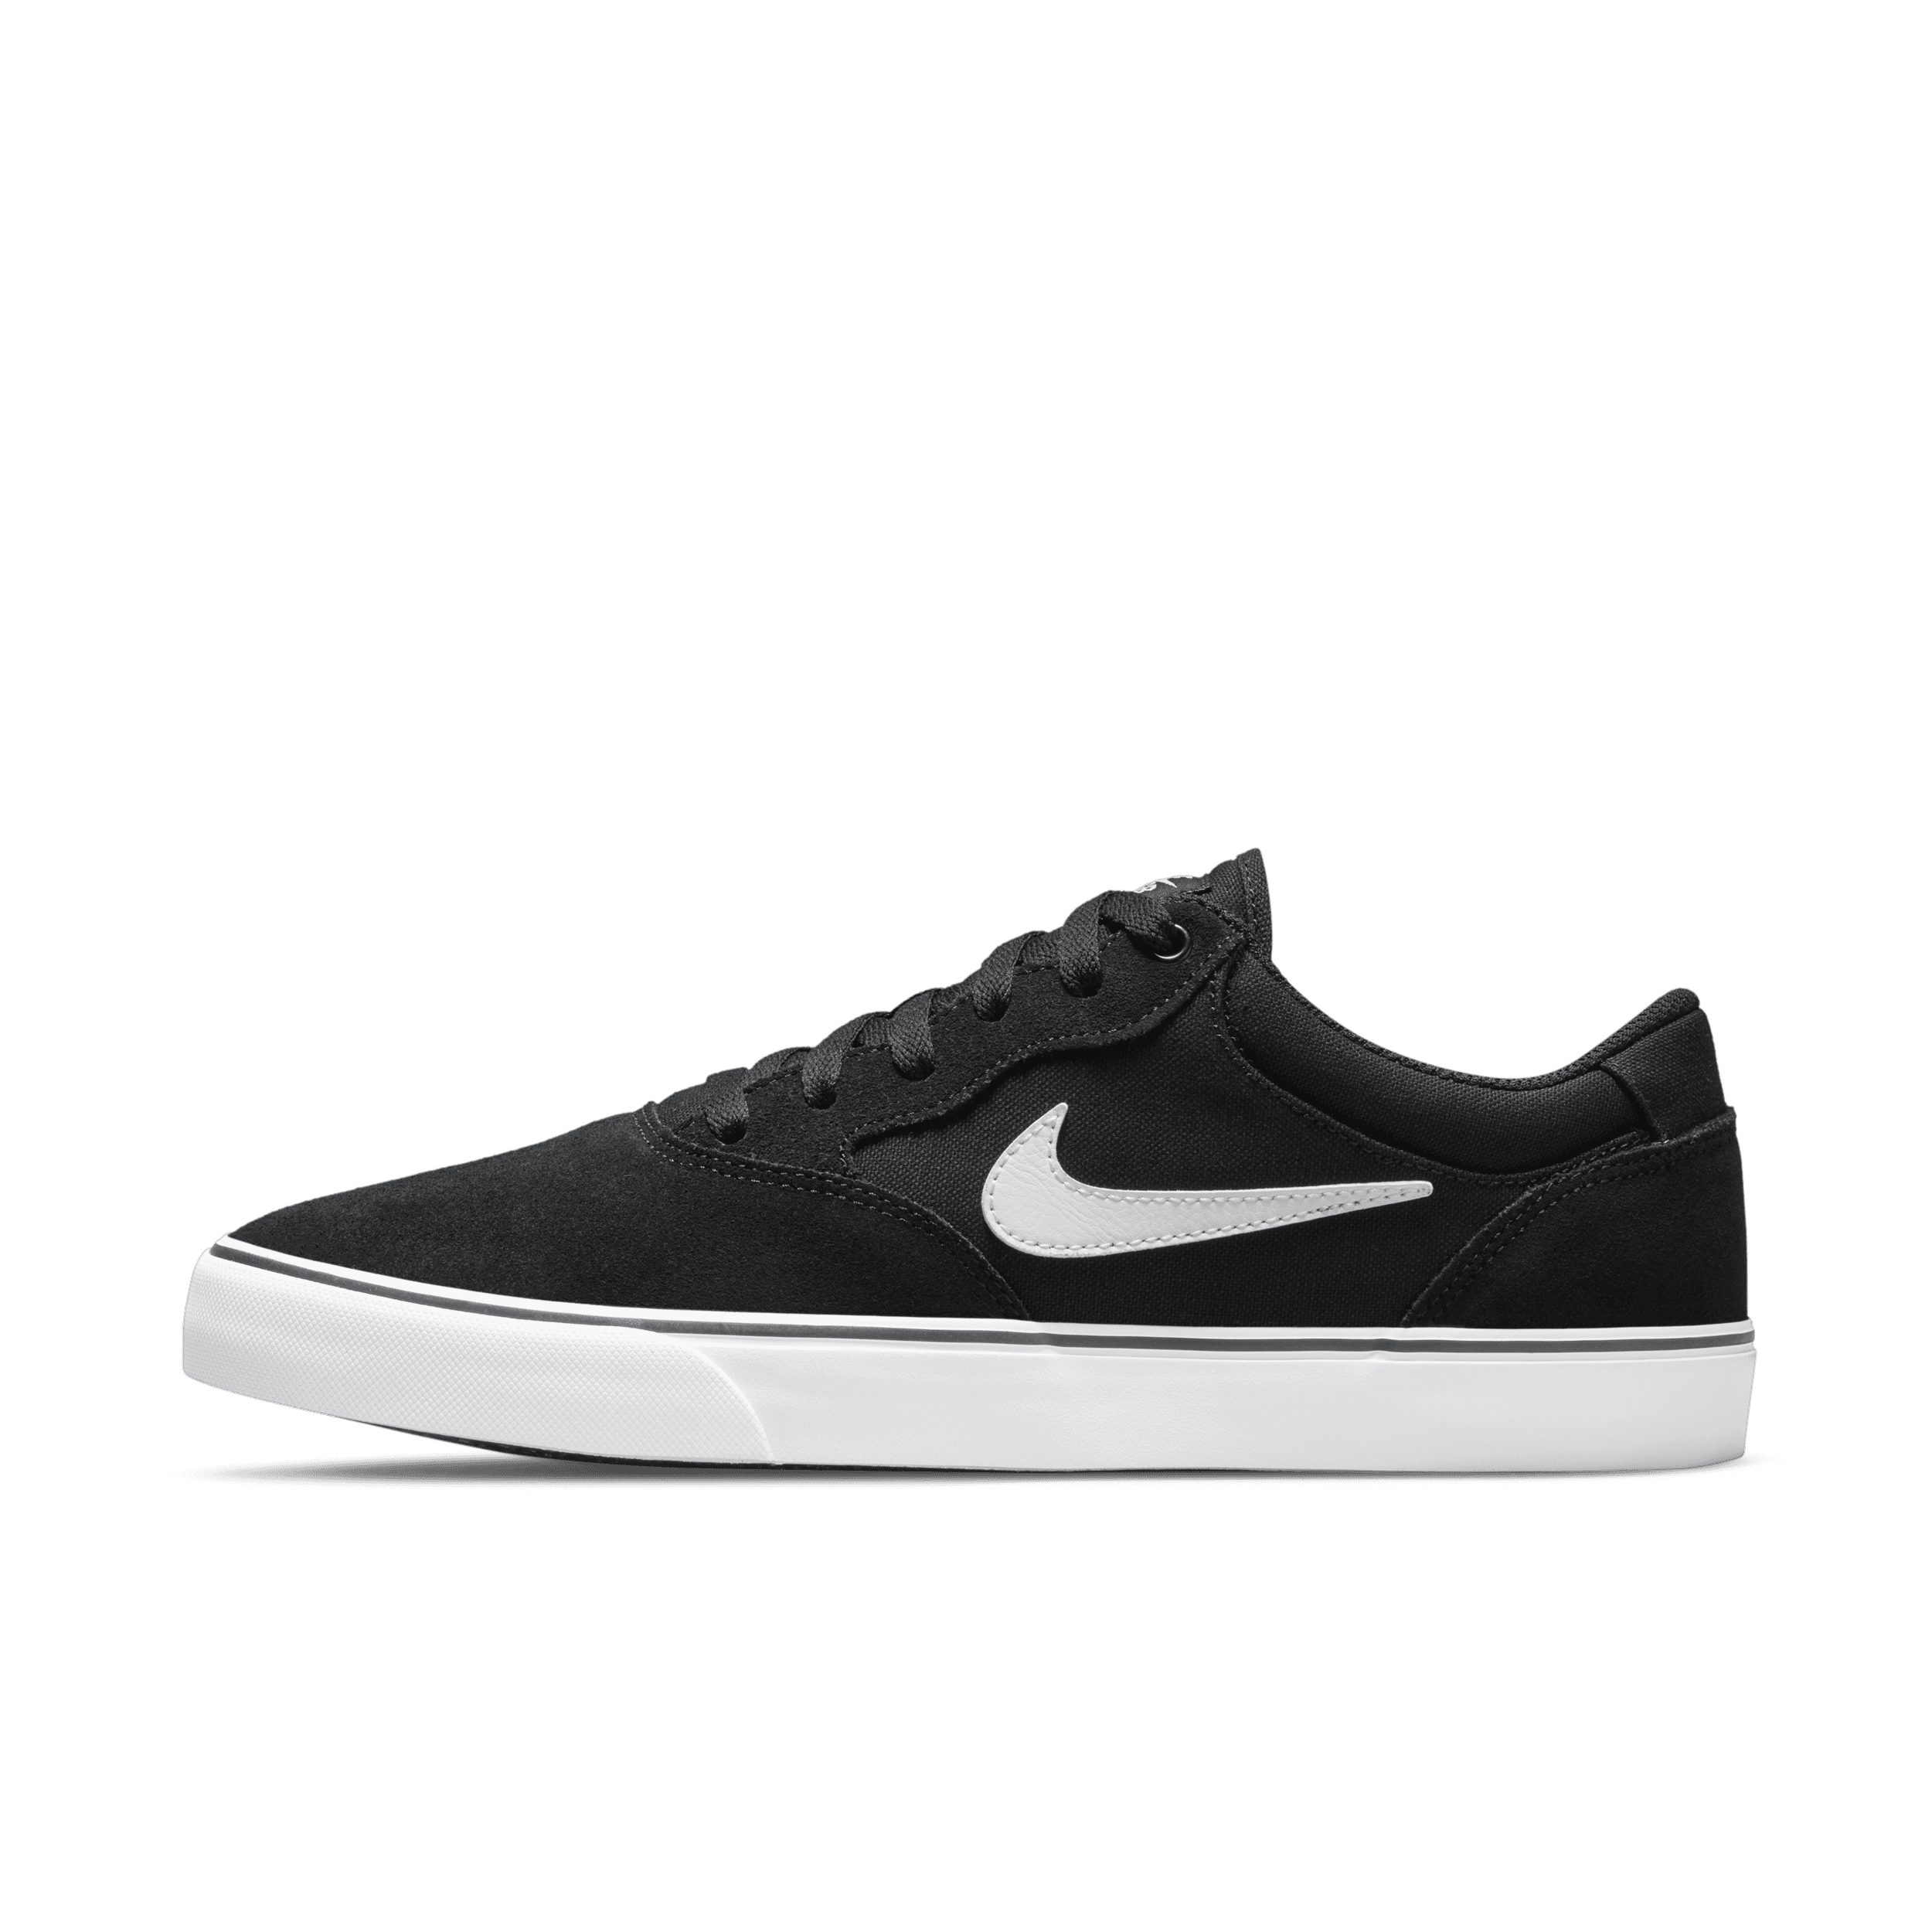 Nike SB Chron 2 Zapatillas de skateboard - Negro